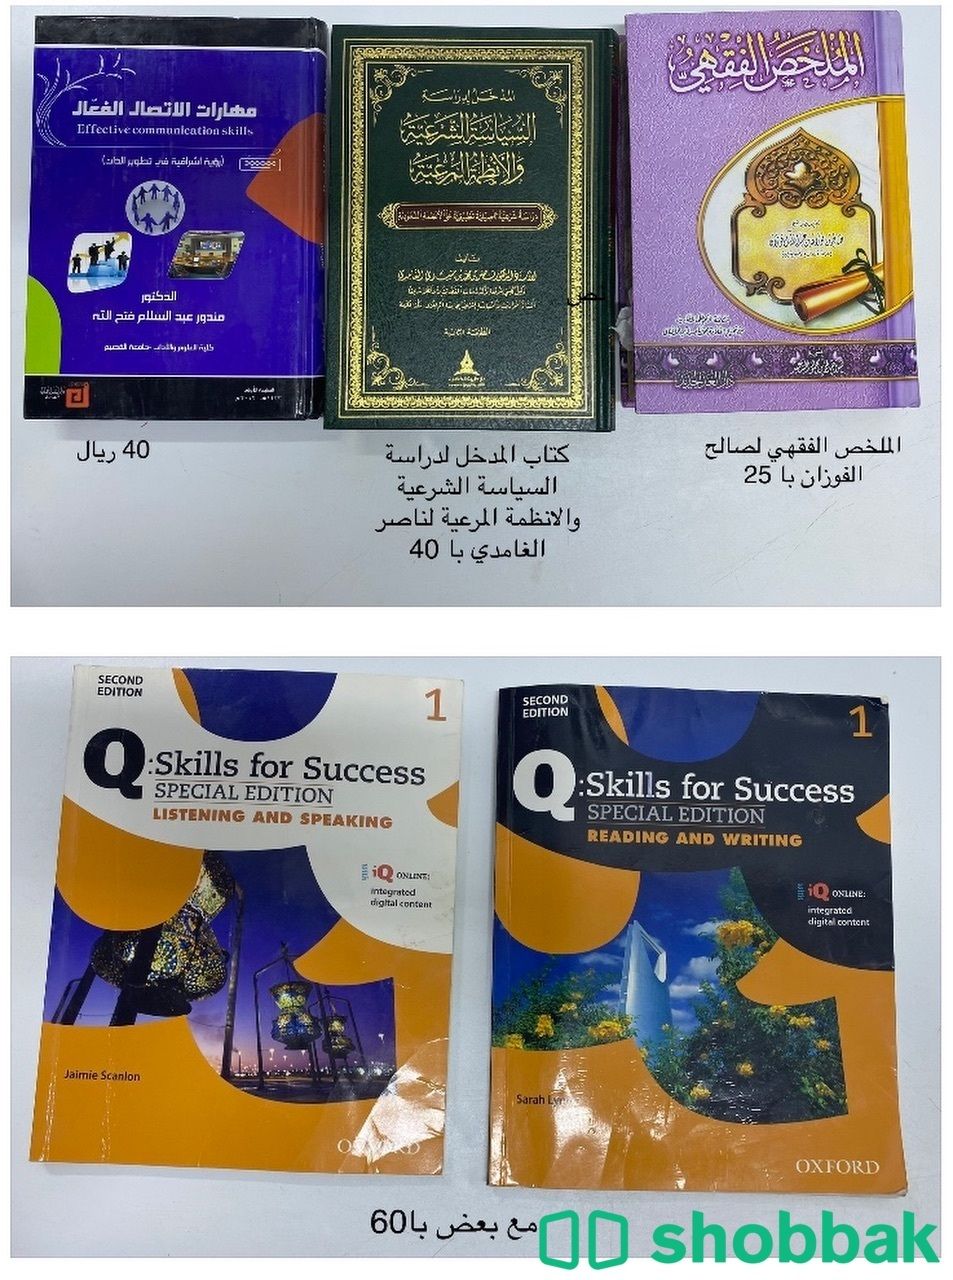 كتب دراسيه للبيع Shobbak Saudi Arabia